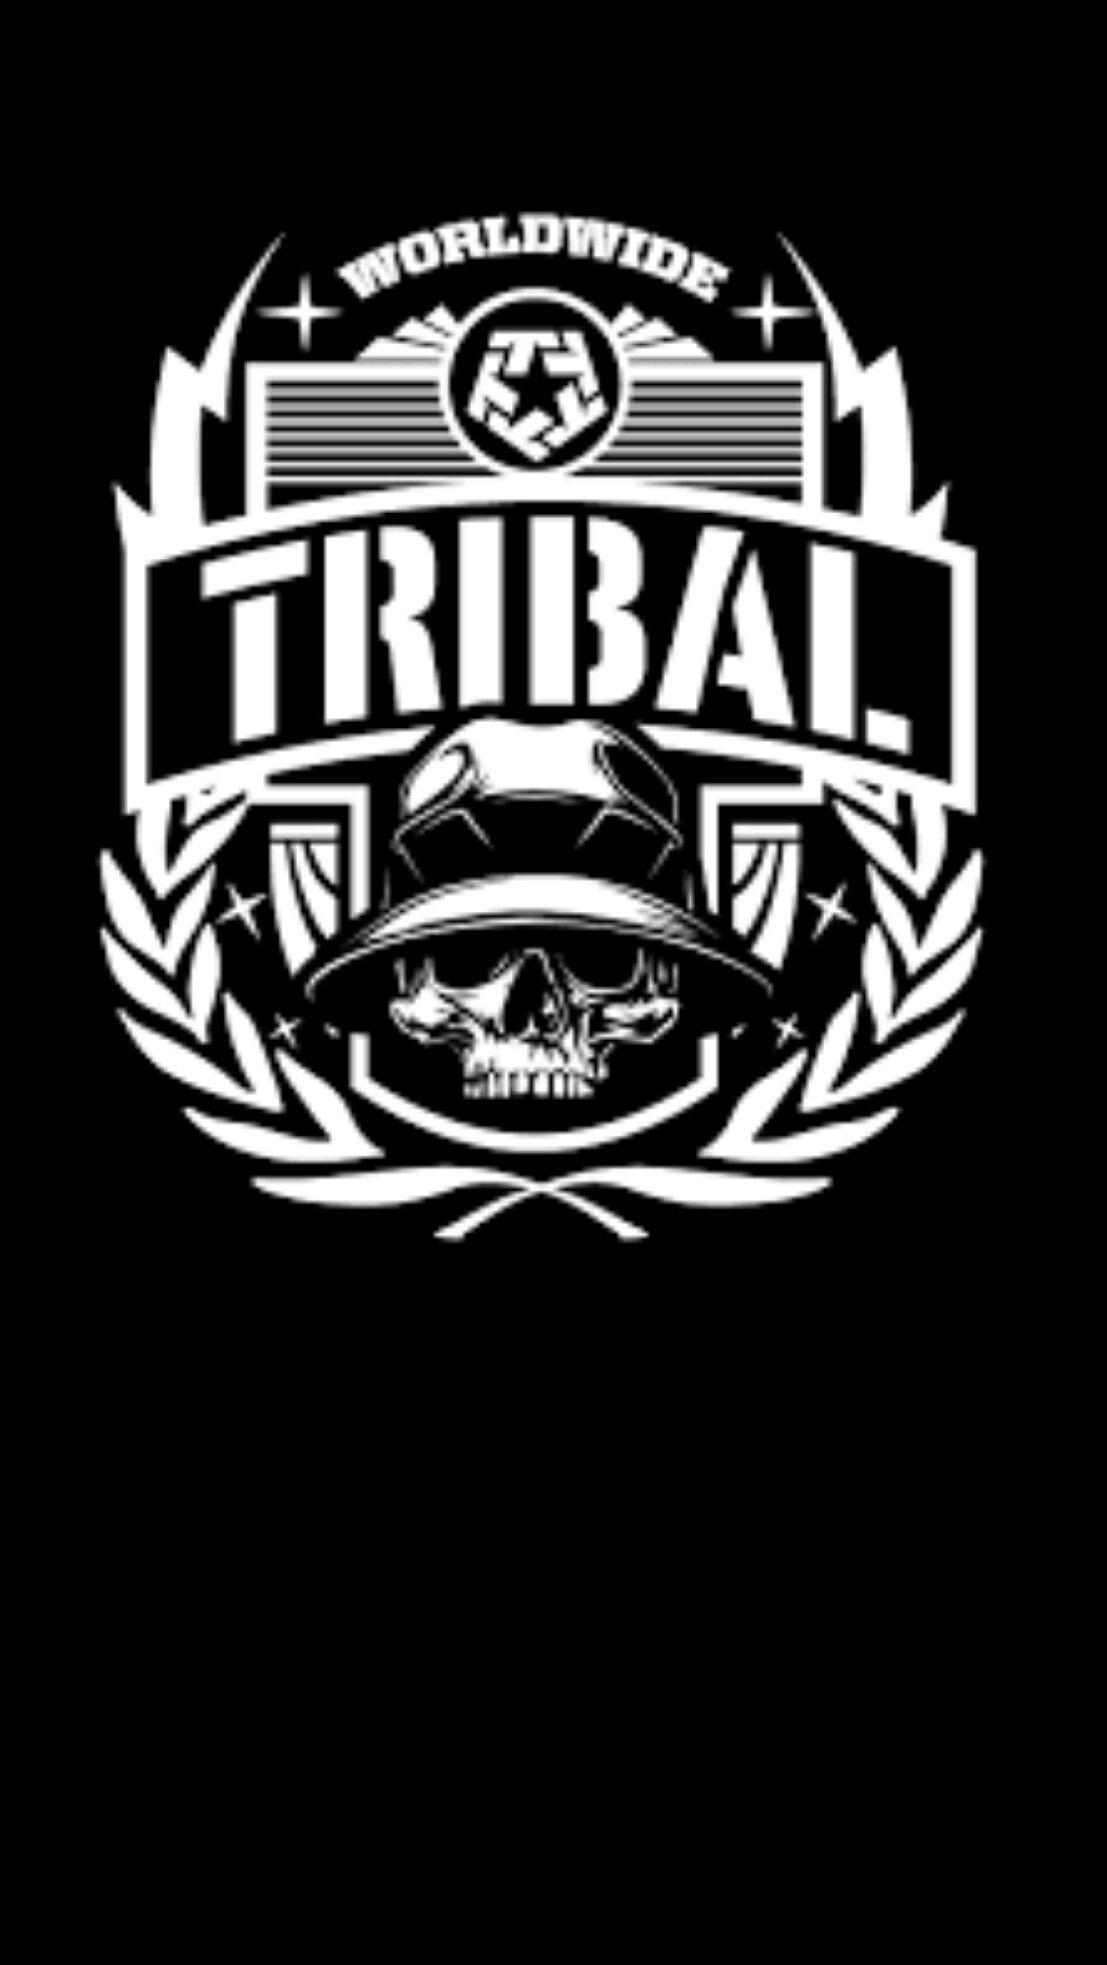 Tribal Gear Wallpaper